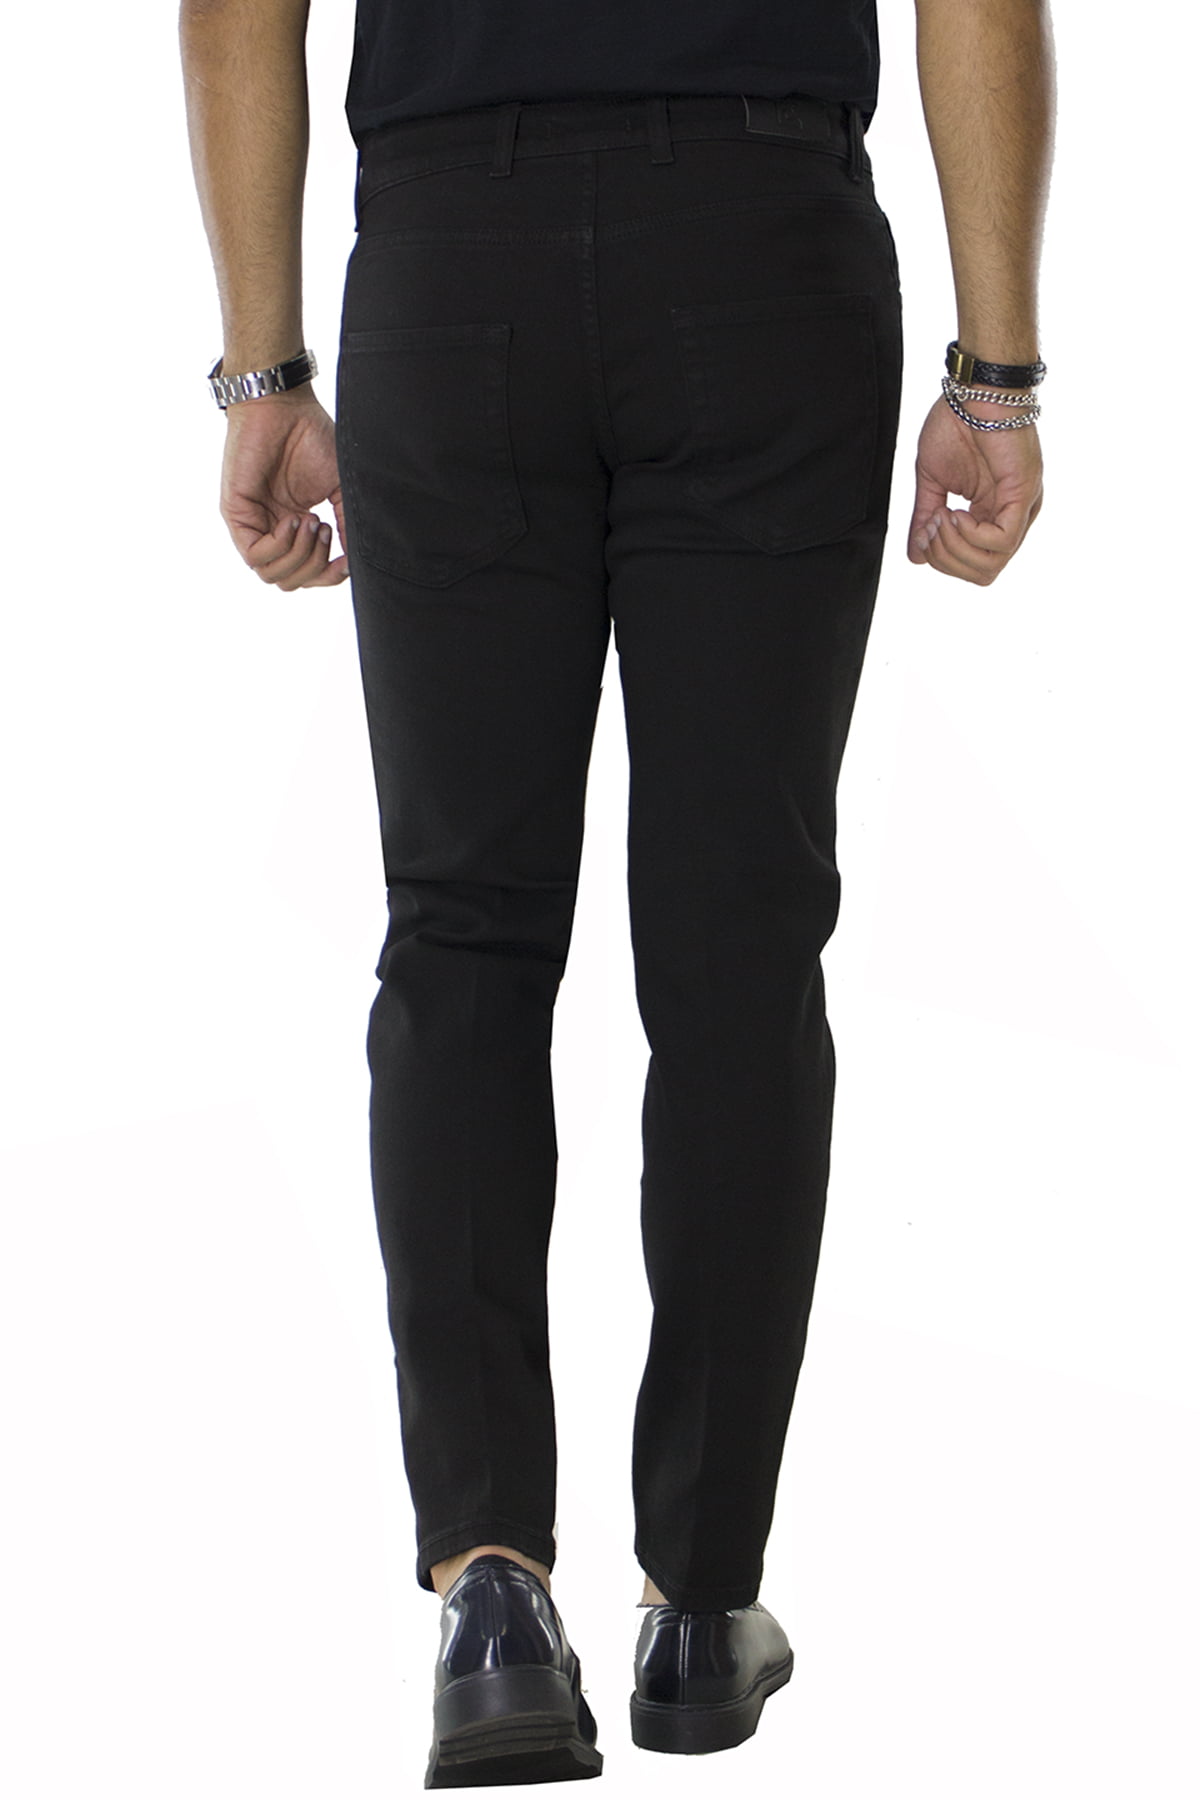 Jeans uomo nero tinta unita modello 5 tasche slim fit made in italy